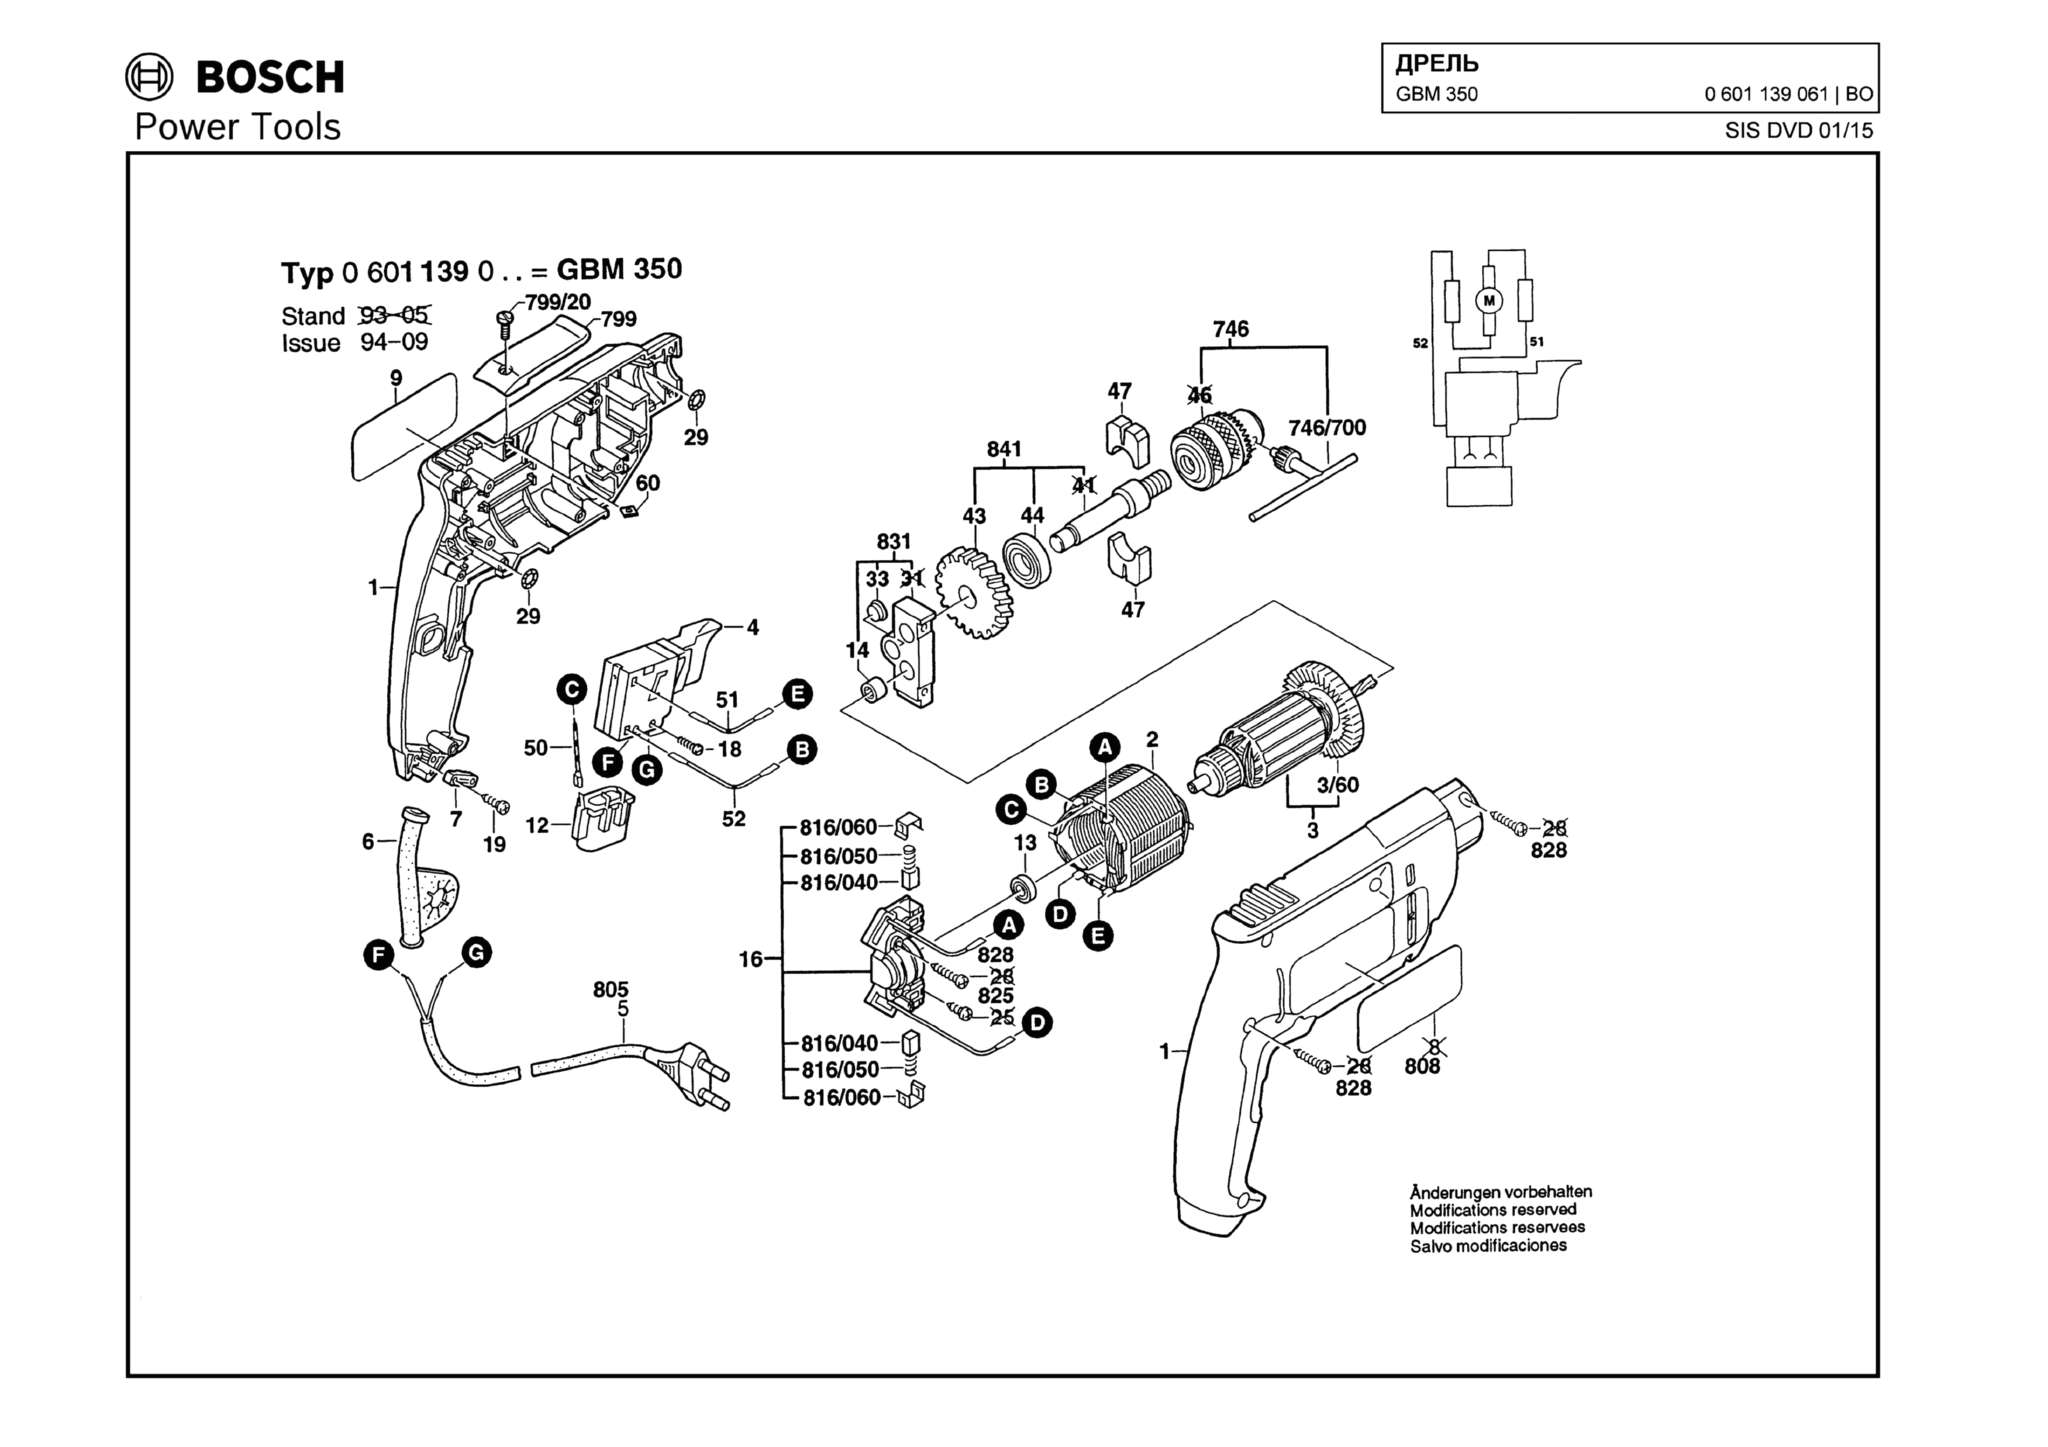 Запчасти, схема и деталировка Bosch GBM 350 (ТИП 0601139061)